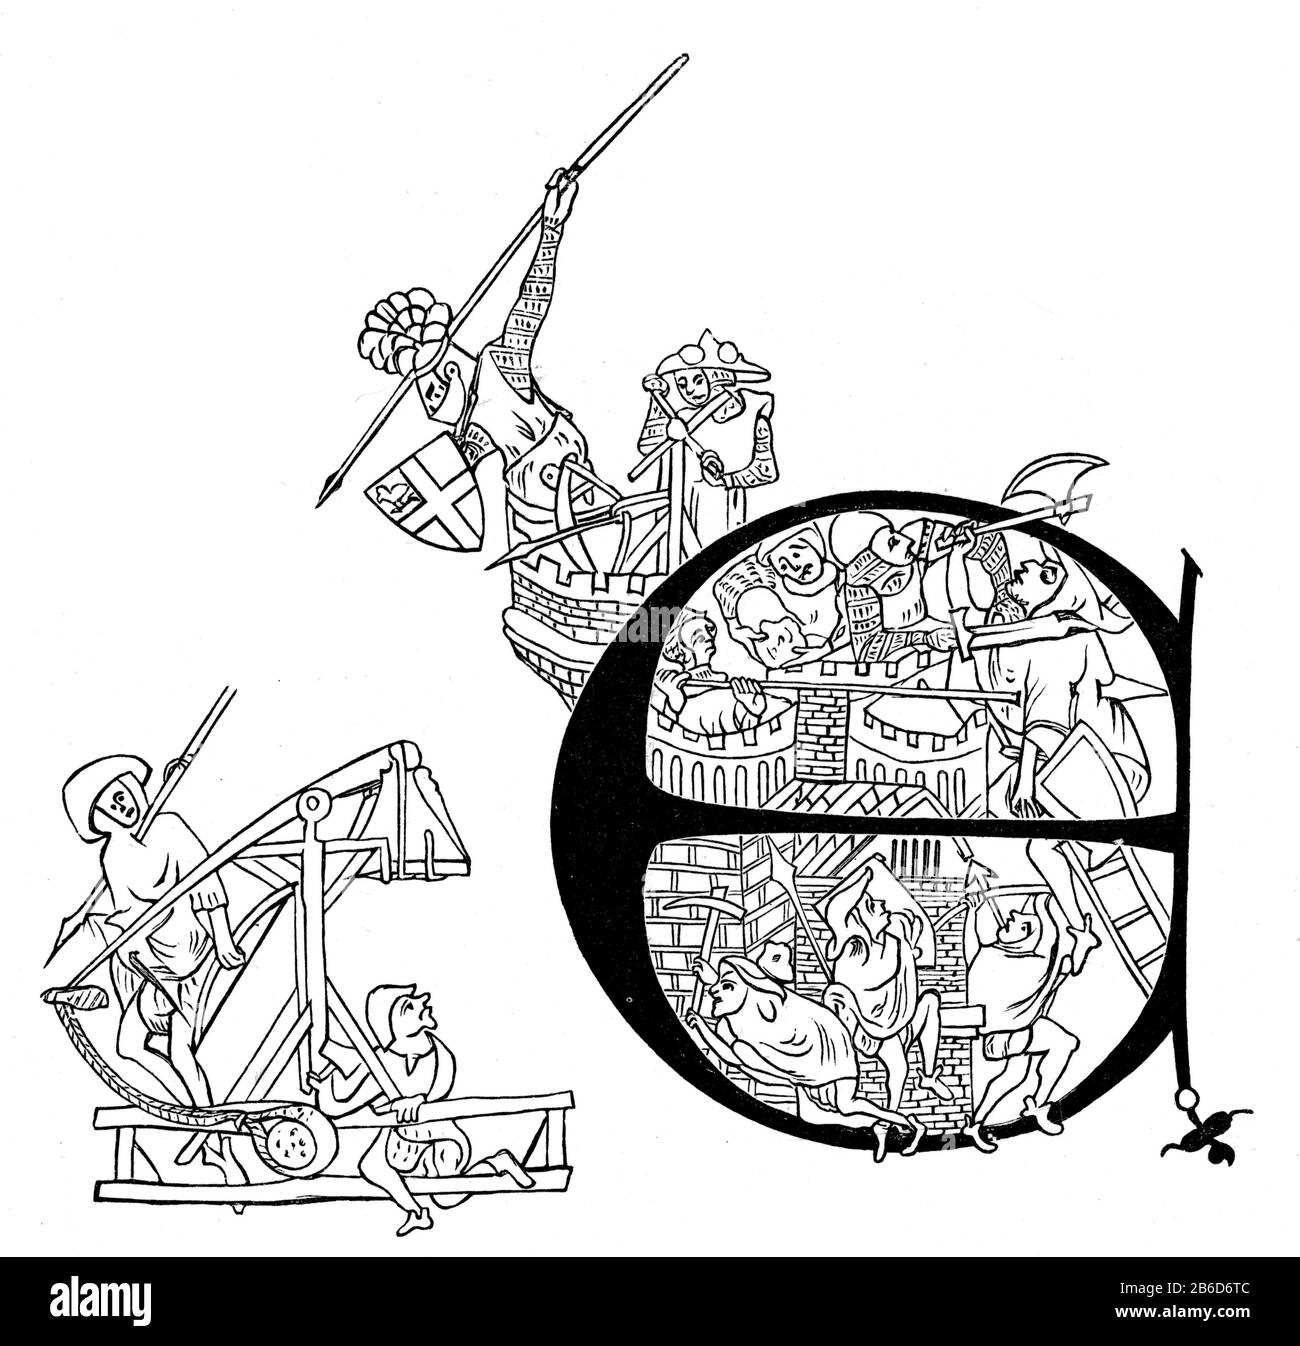 Belagerung von Carlisle durch die Schotten, AD 1315. Andrew Harclay, 1. Earl of Carlisle (c1270-1323) (erkennbar am Wappen auf seinem Schild) Speere auf die Soldaten von Robert I. werfen Initialbrief von Edward II's Charter an Carlisle (1316) comemmorating Harclays erfolgreiche Verteidigung von Carlisle Castle während seiner Belagerung durch Robert I von Schottland im Juli und August 1315. Die Belagerung von Carlisle war ein Ereignis während des Ersten Krieges der schottischen Unabhängigkeit. Stockfoto